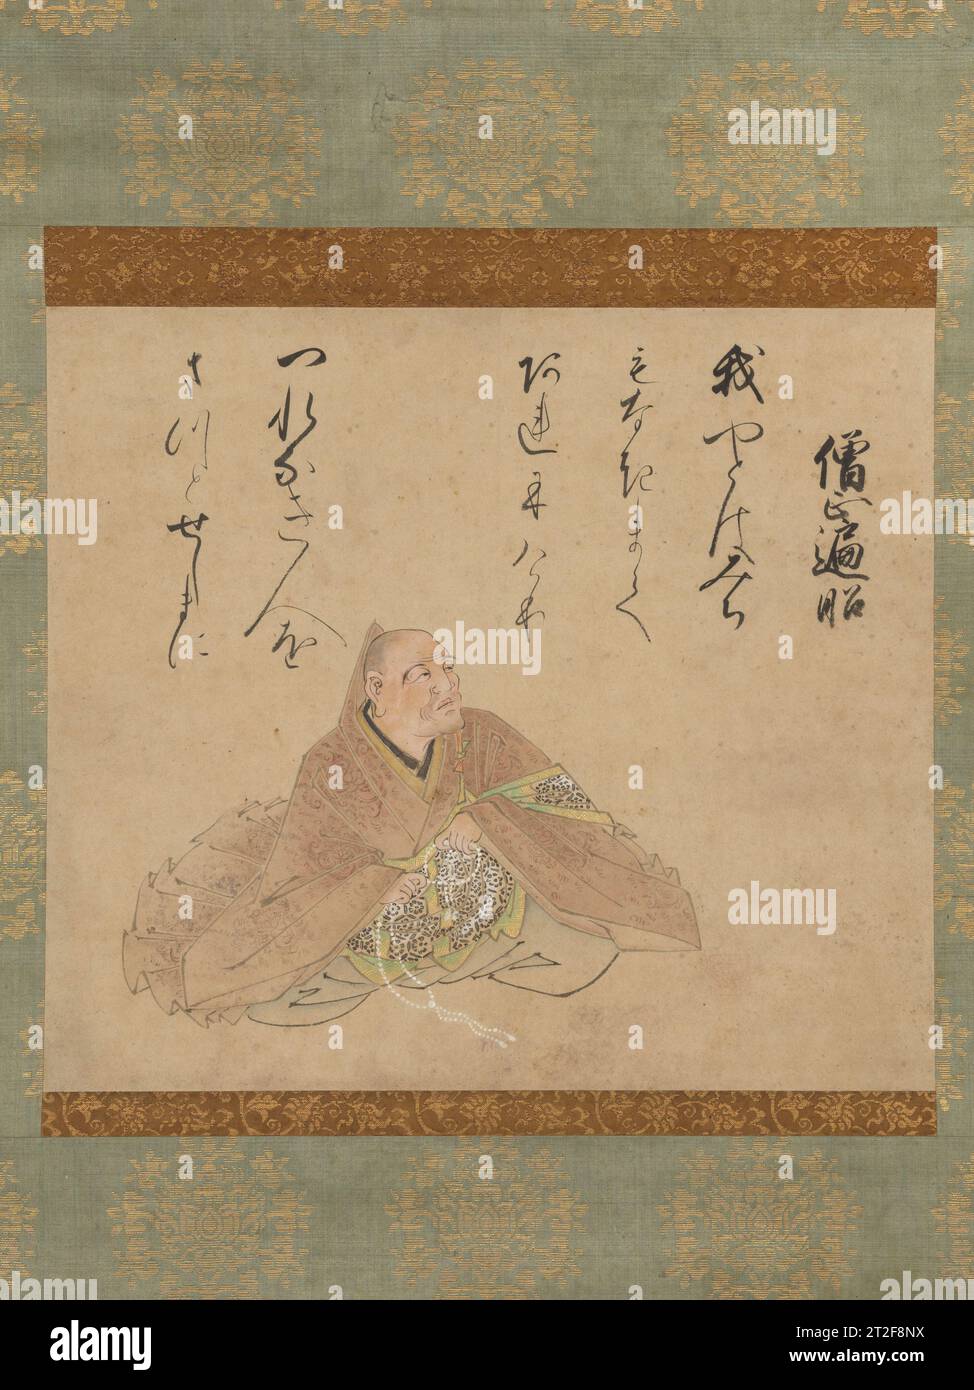 Archevêque Henj ? (S?j? Henj ? Zu), de la version D?on des trente-six immortels poétiques Iwasa Matabei ????? Japonais années 1620–1630 dans l'ancienne société de justice japonaise, la poésie était la quintessence de l'expérience littéraire. Idéalisés et profondément admirés, les poètes étaient souvent commémorés dans les portraits. Au début du XIe siècle, Fujiwara Kint ? (966-1041) ont sélectionné trente-six « immortels poétiques » (kasen) du passé, et leurs images sont devenues un thème populaire dans Yamato-e, la peinture traditionnelle japonaise. Ce portrait imaginaire de l'archevêque Henj ? faisait à l'origine partie d'un ensemble d'albums leaves comprenant all Banque D'Images